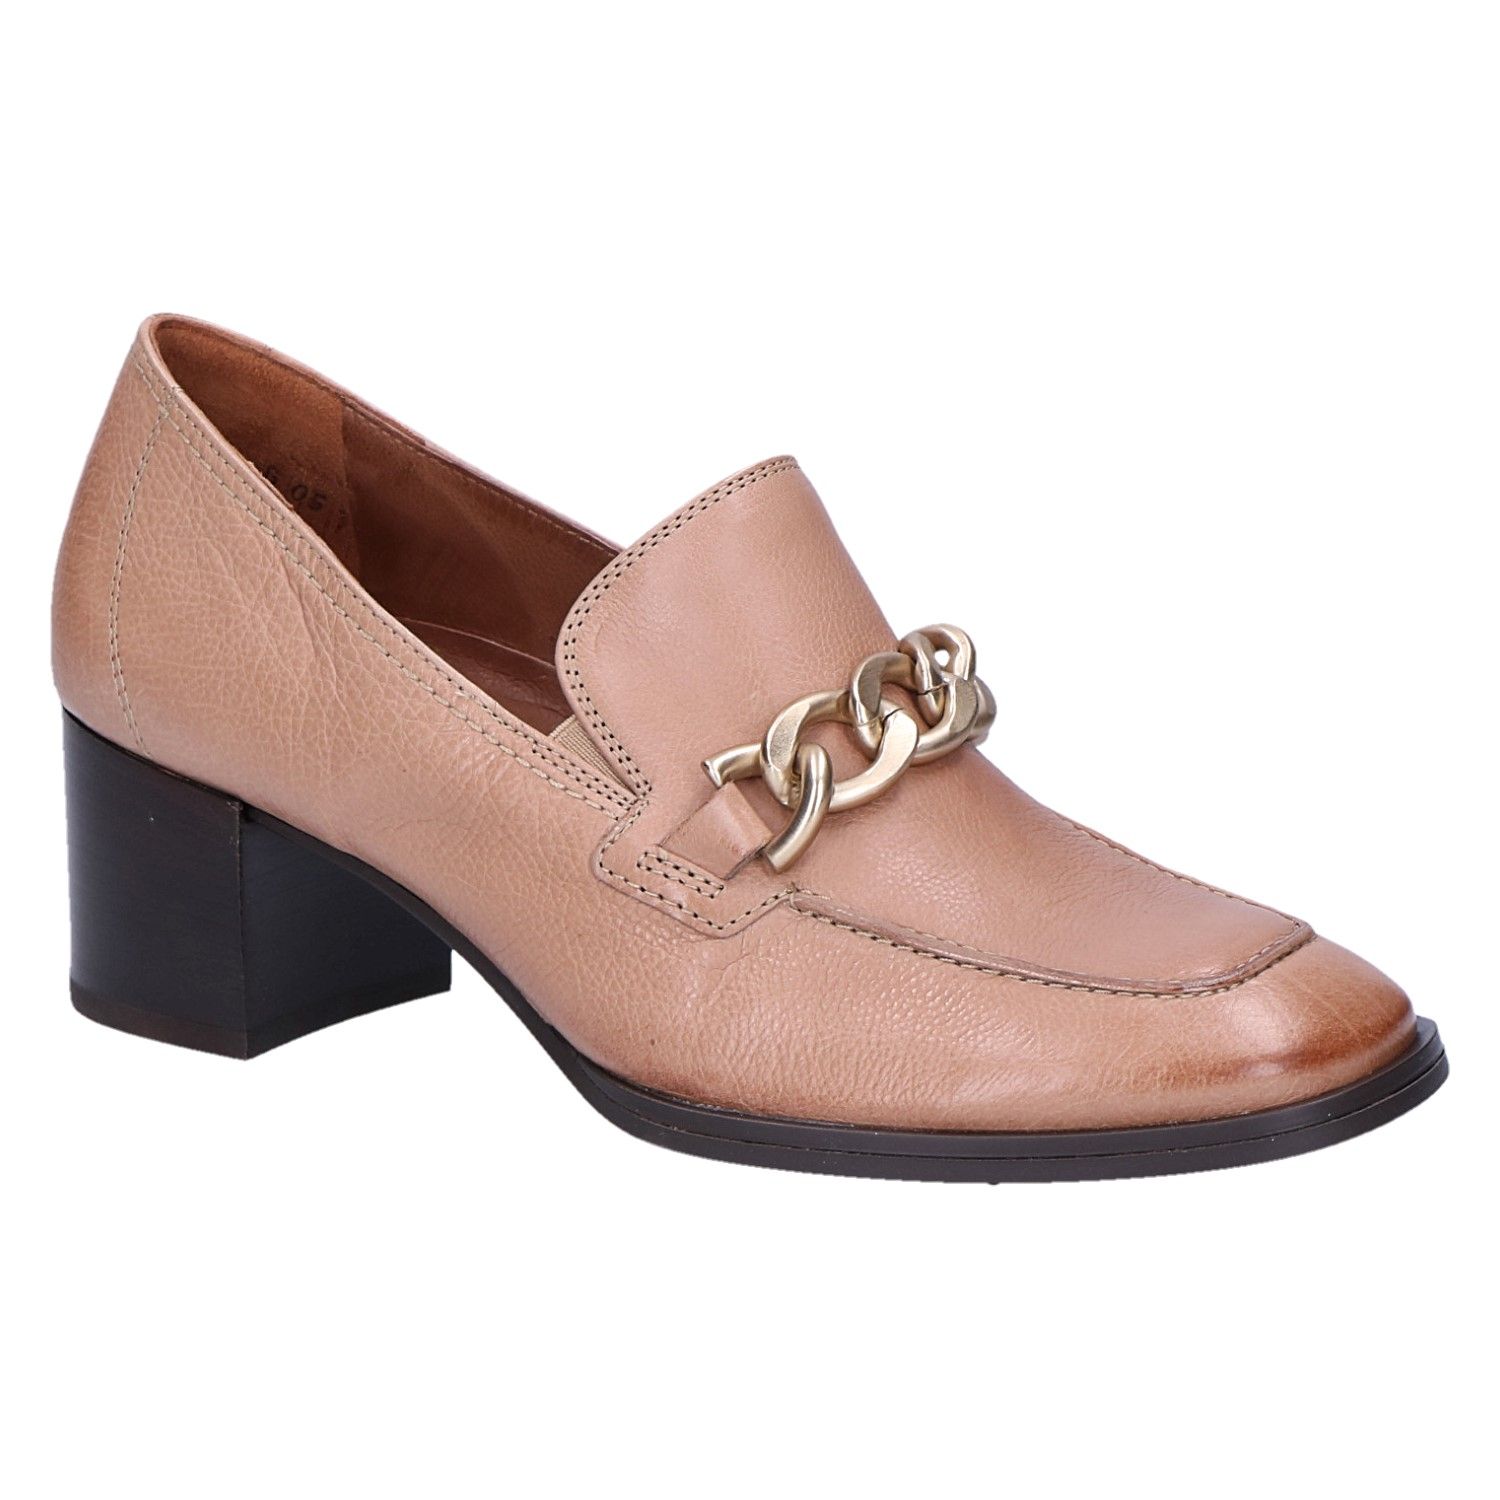 | op maat Harlem Schoenen Schoenen damesschoenen Instappers Loafers Loafers in Beige Suede Swing dansschoenen voor dames Vintage schoenen 